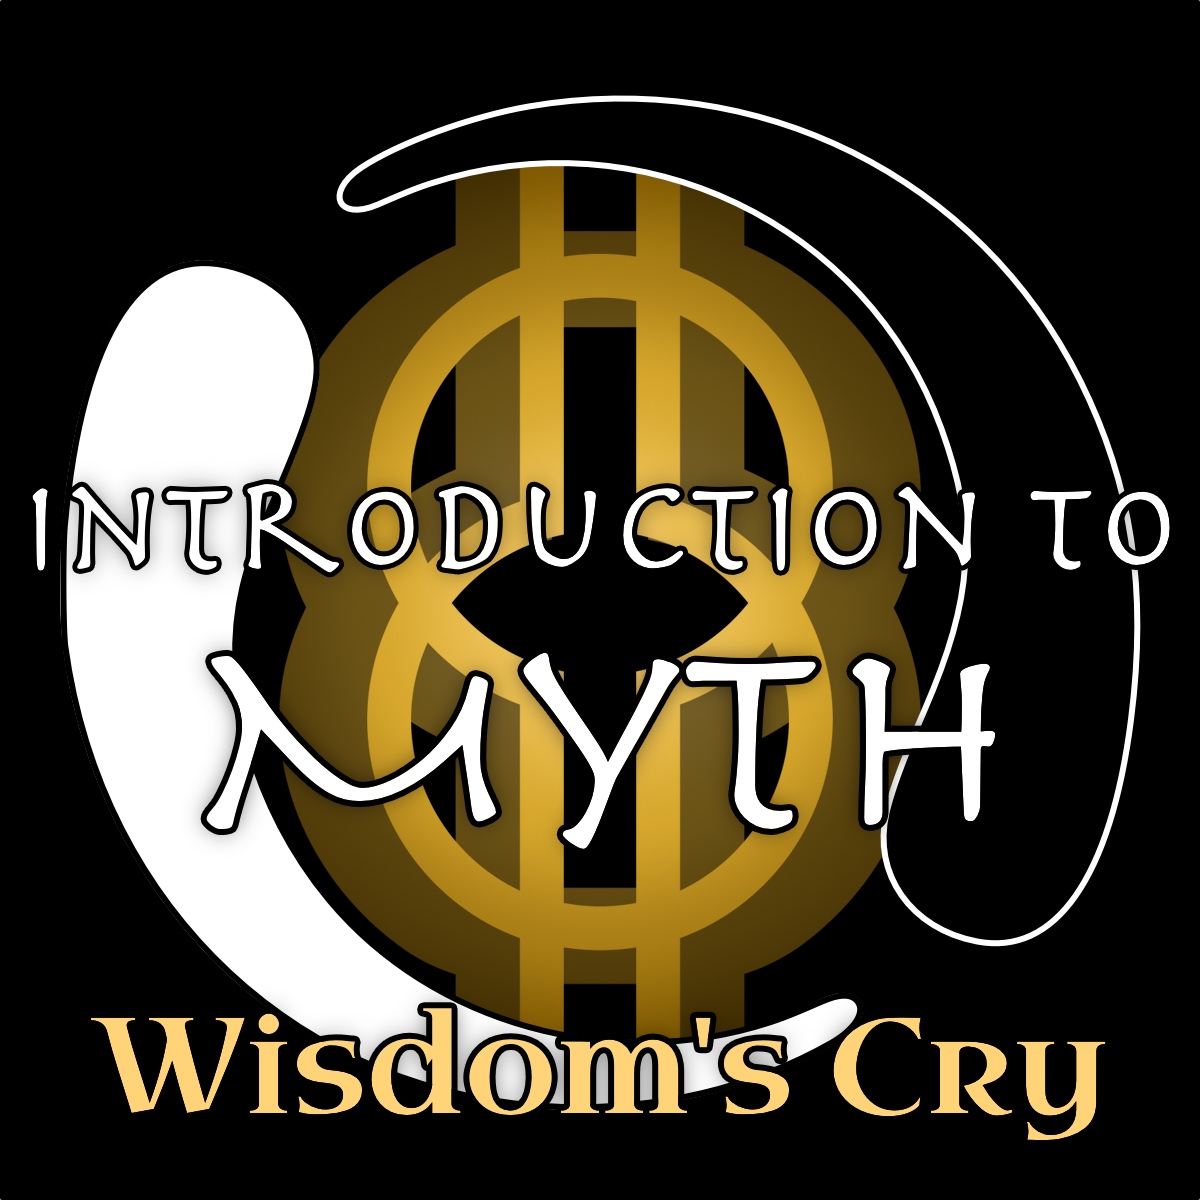 17- Mystical Function of Myth